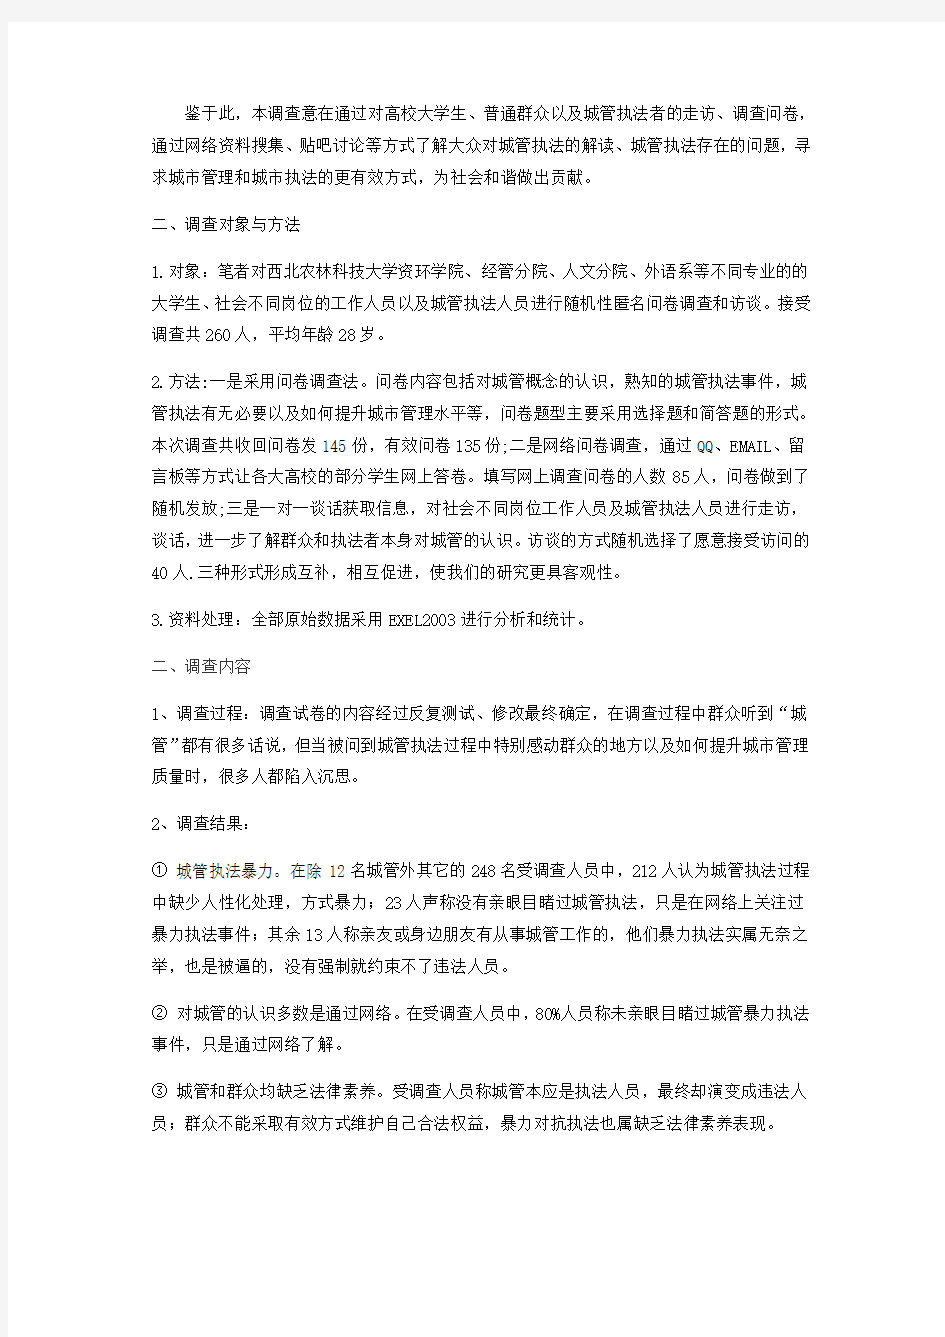 关于中国城管执法的调查报告